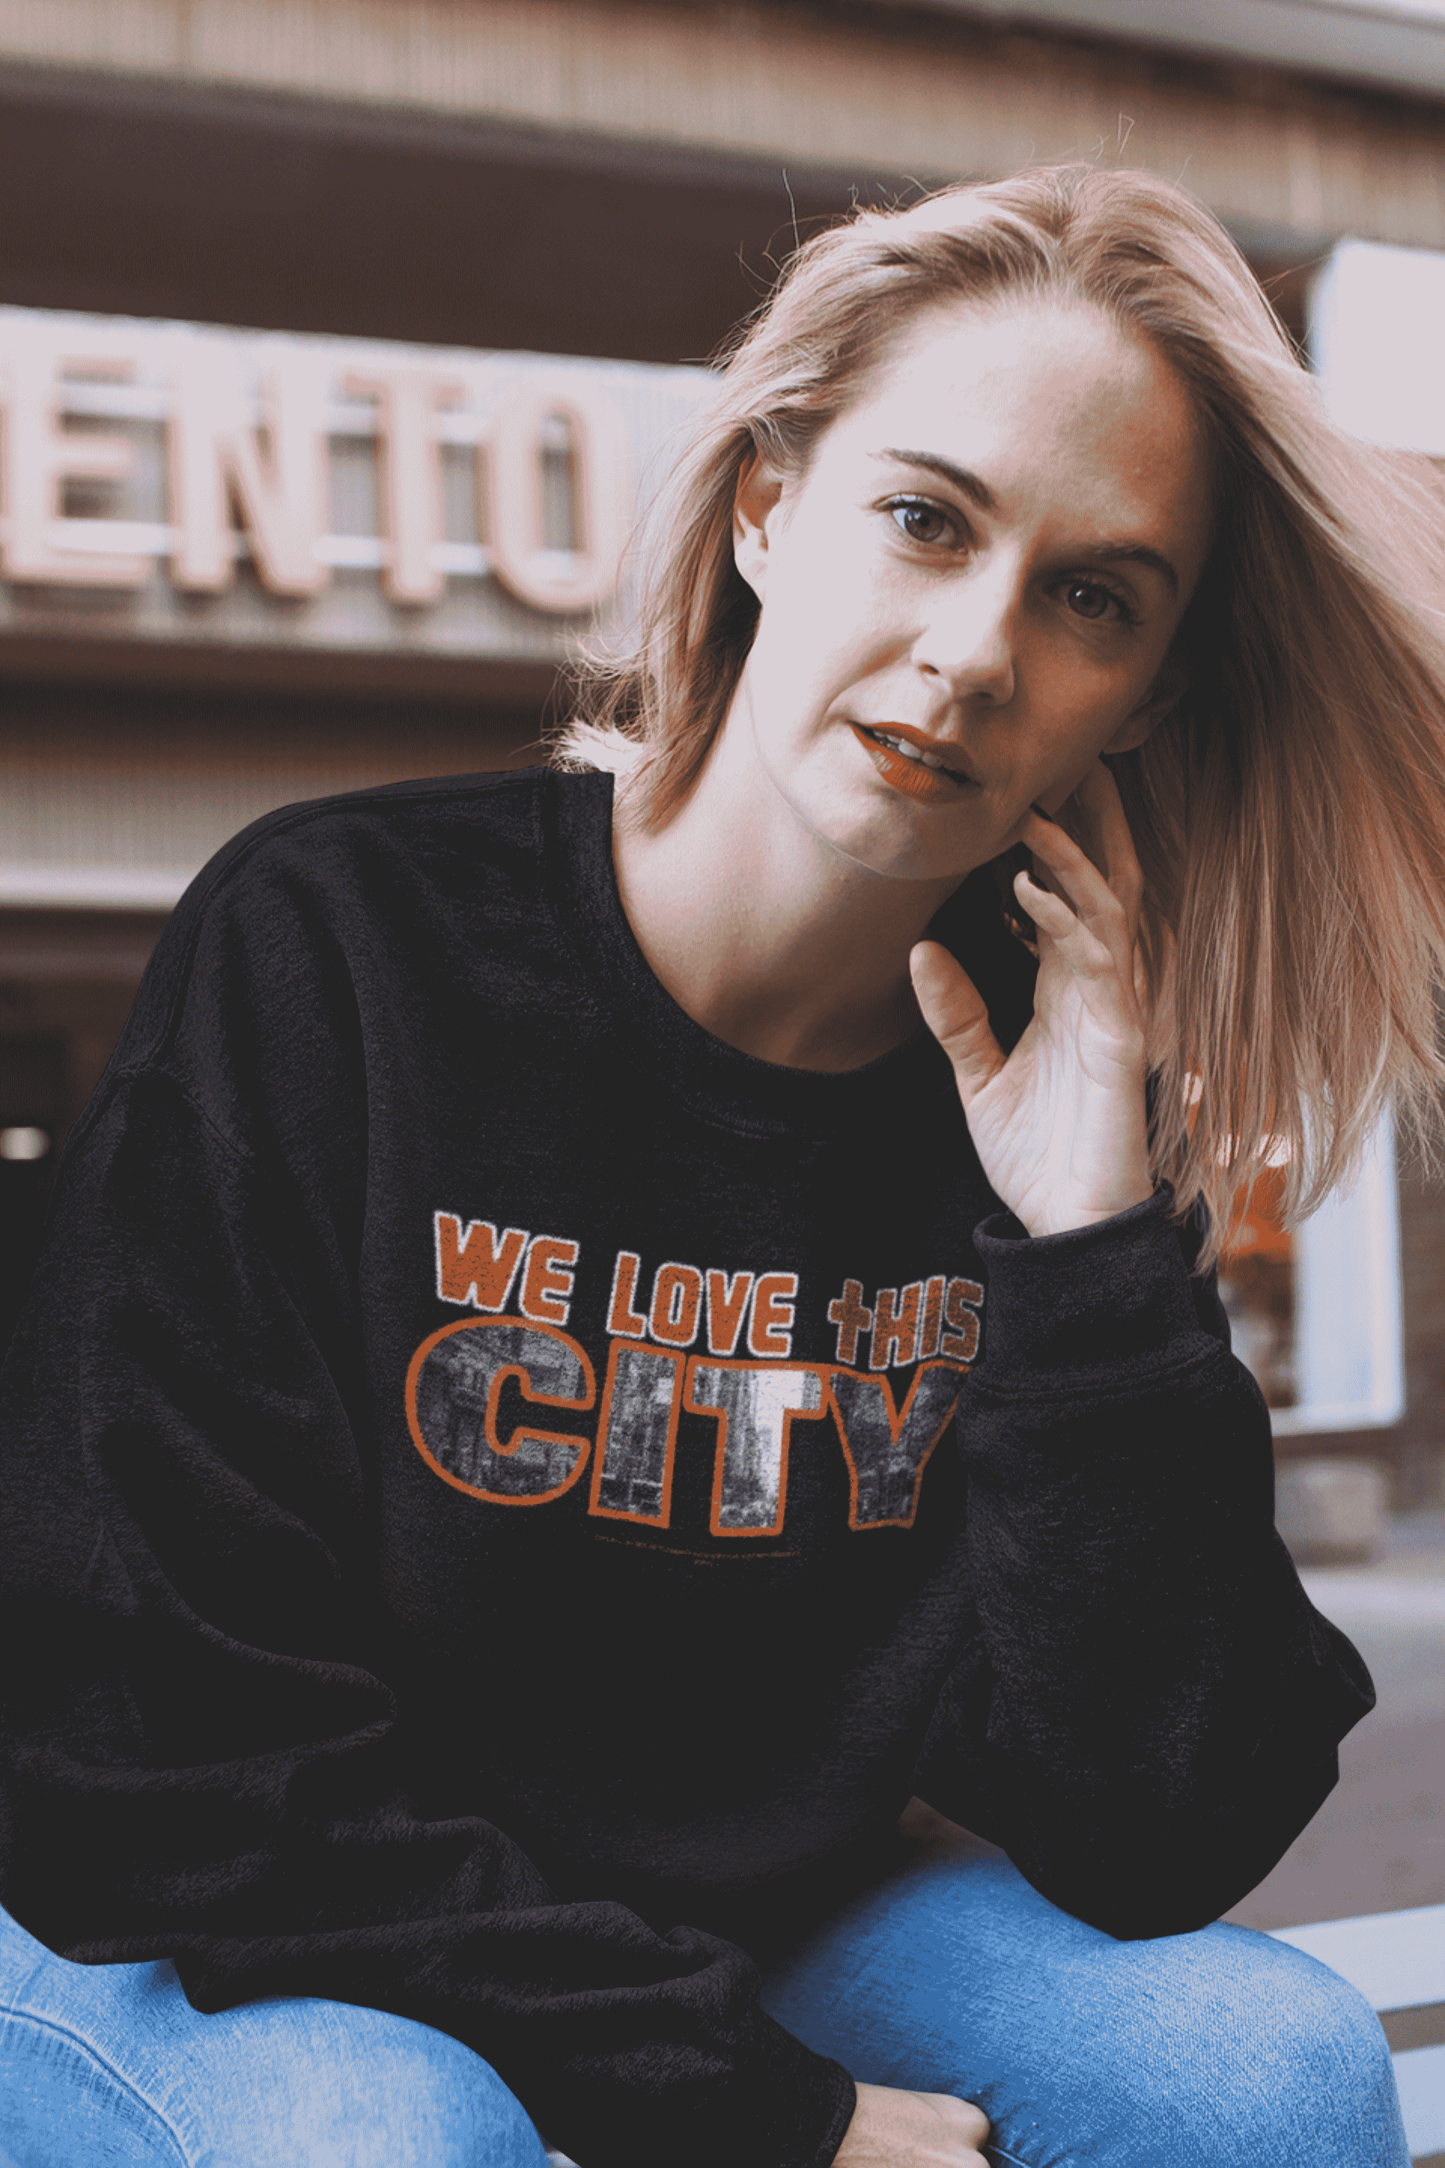 We love this City. Sweatshirt.